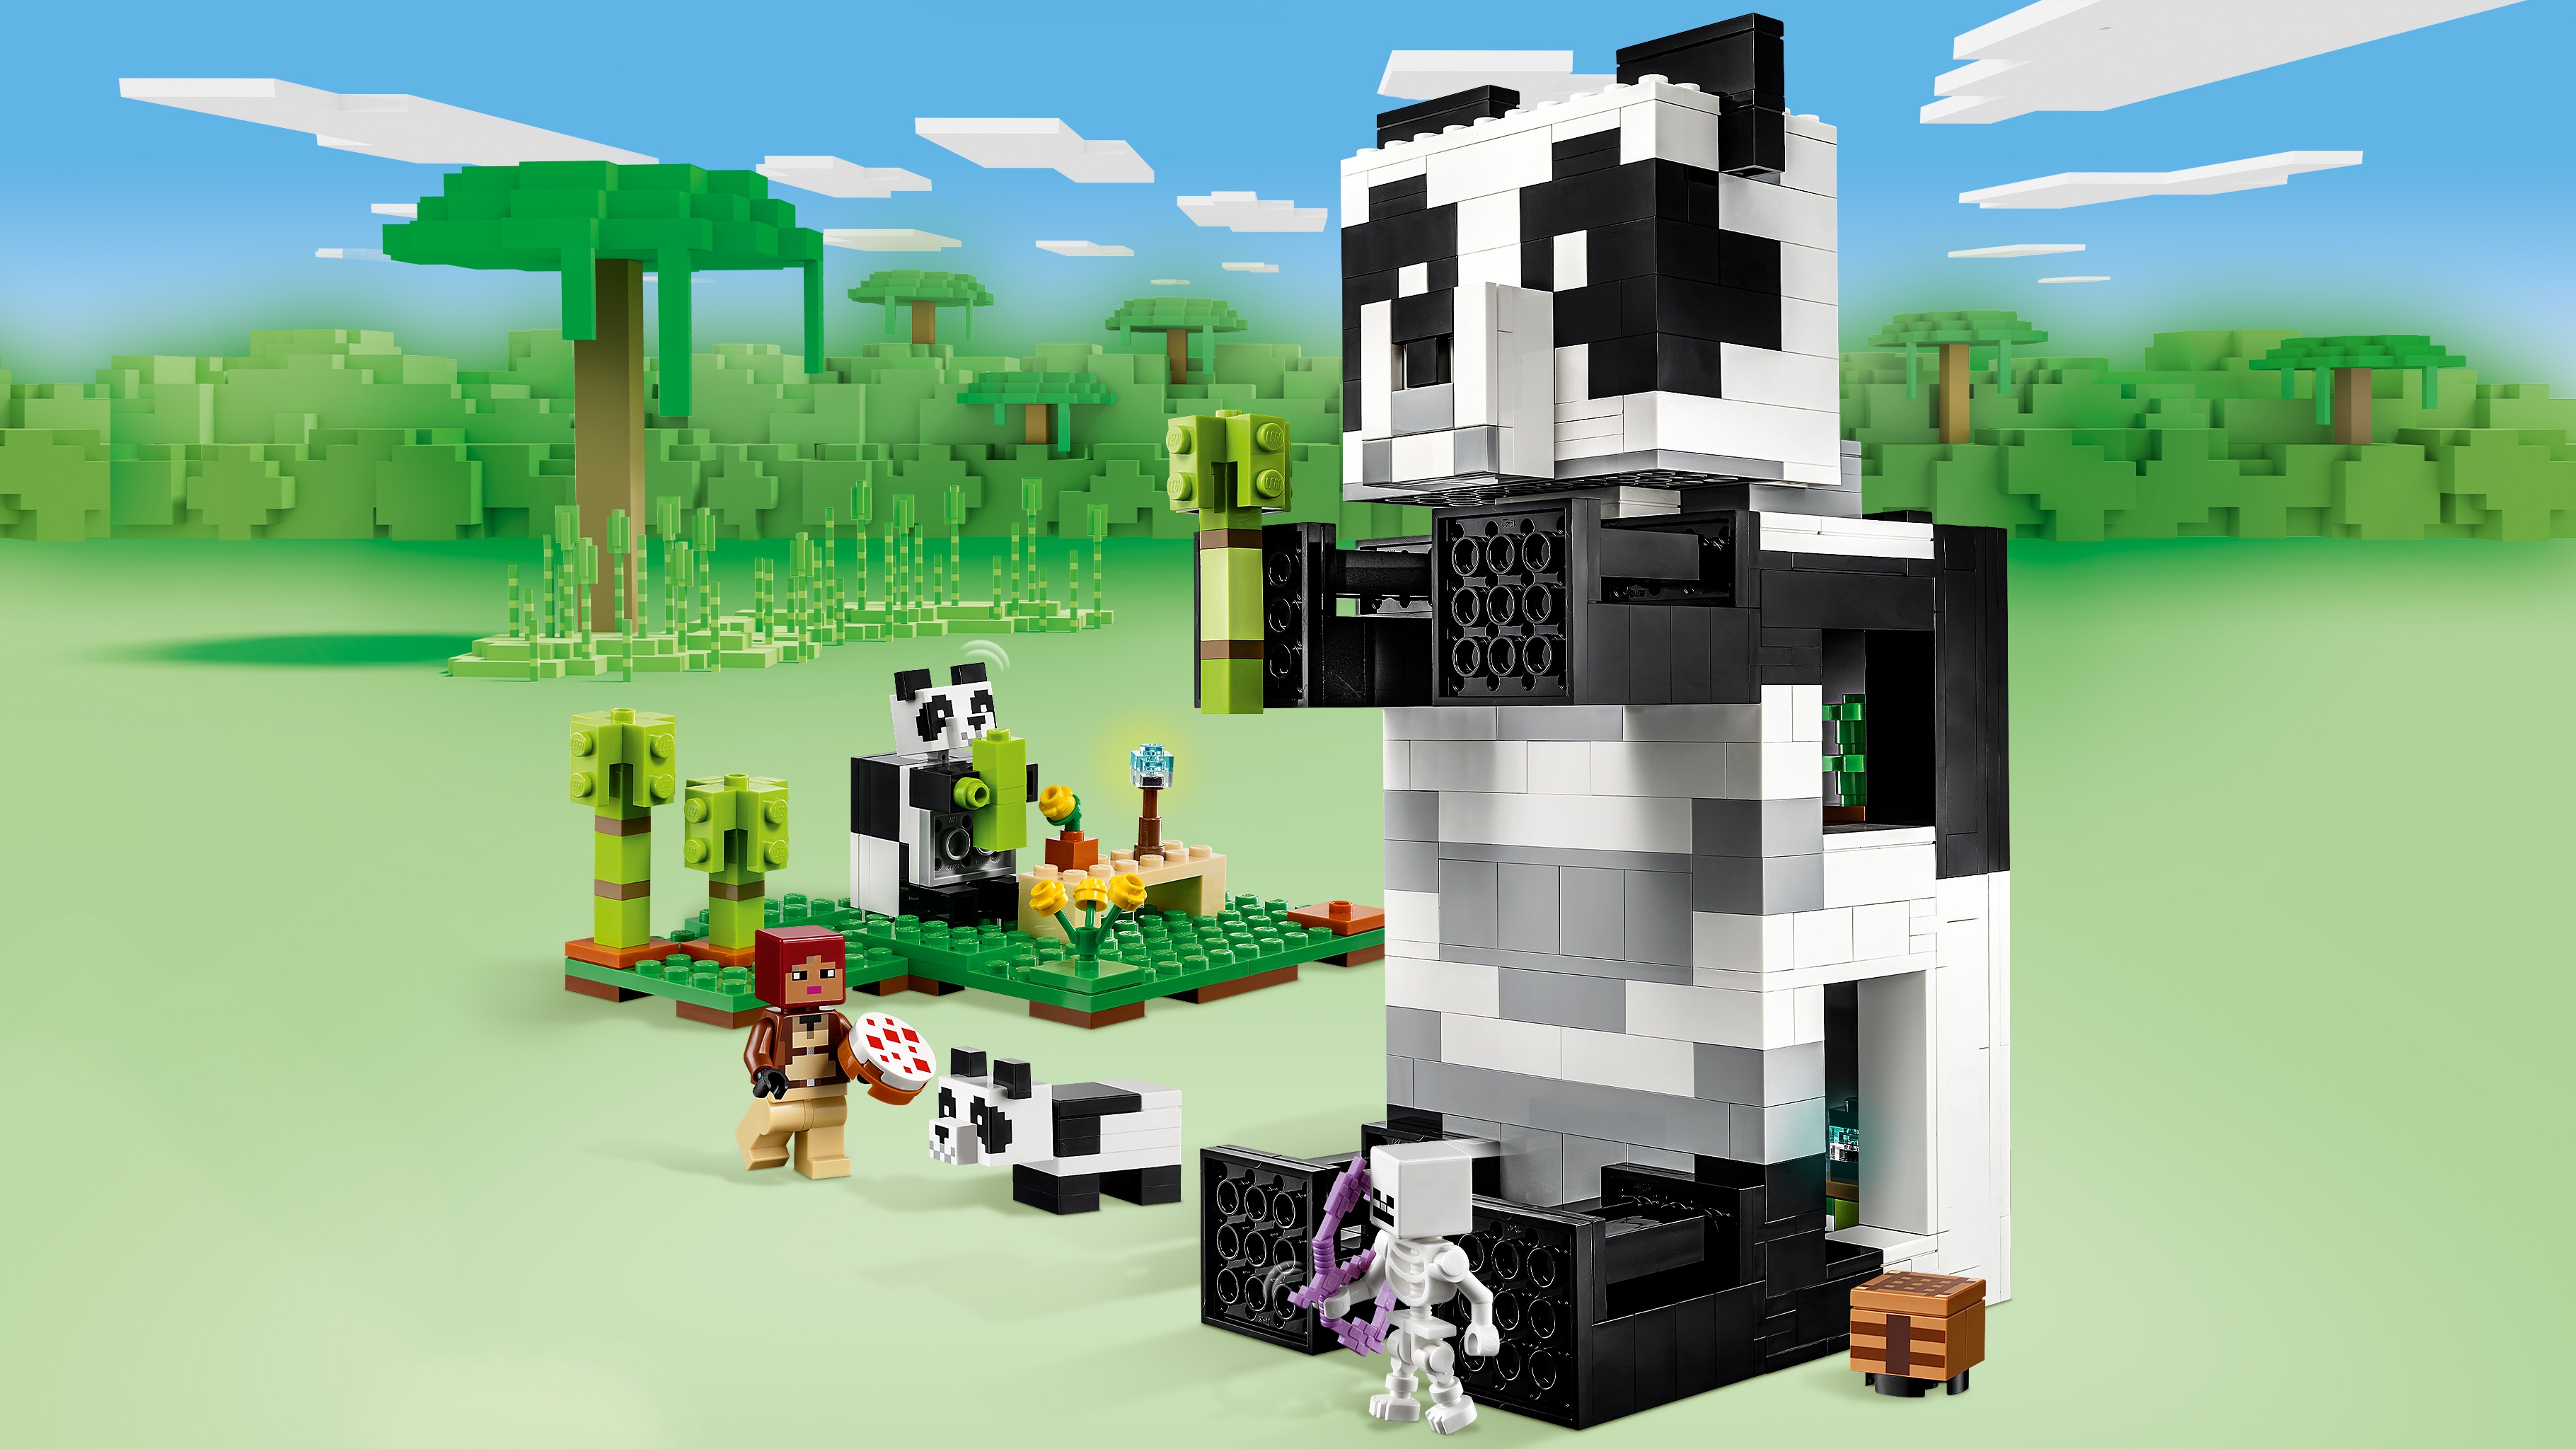 パンダの楽園 21245 - レゴ®マインクラフト セット - LEGO.comキッズ